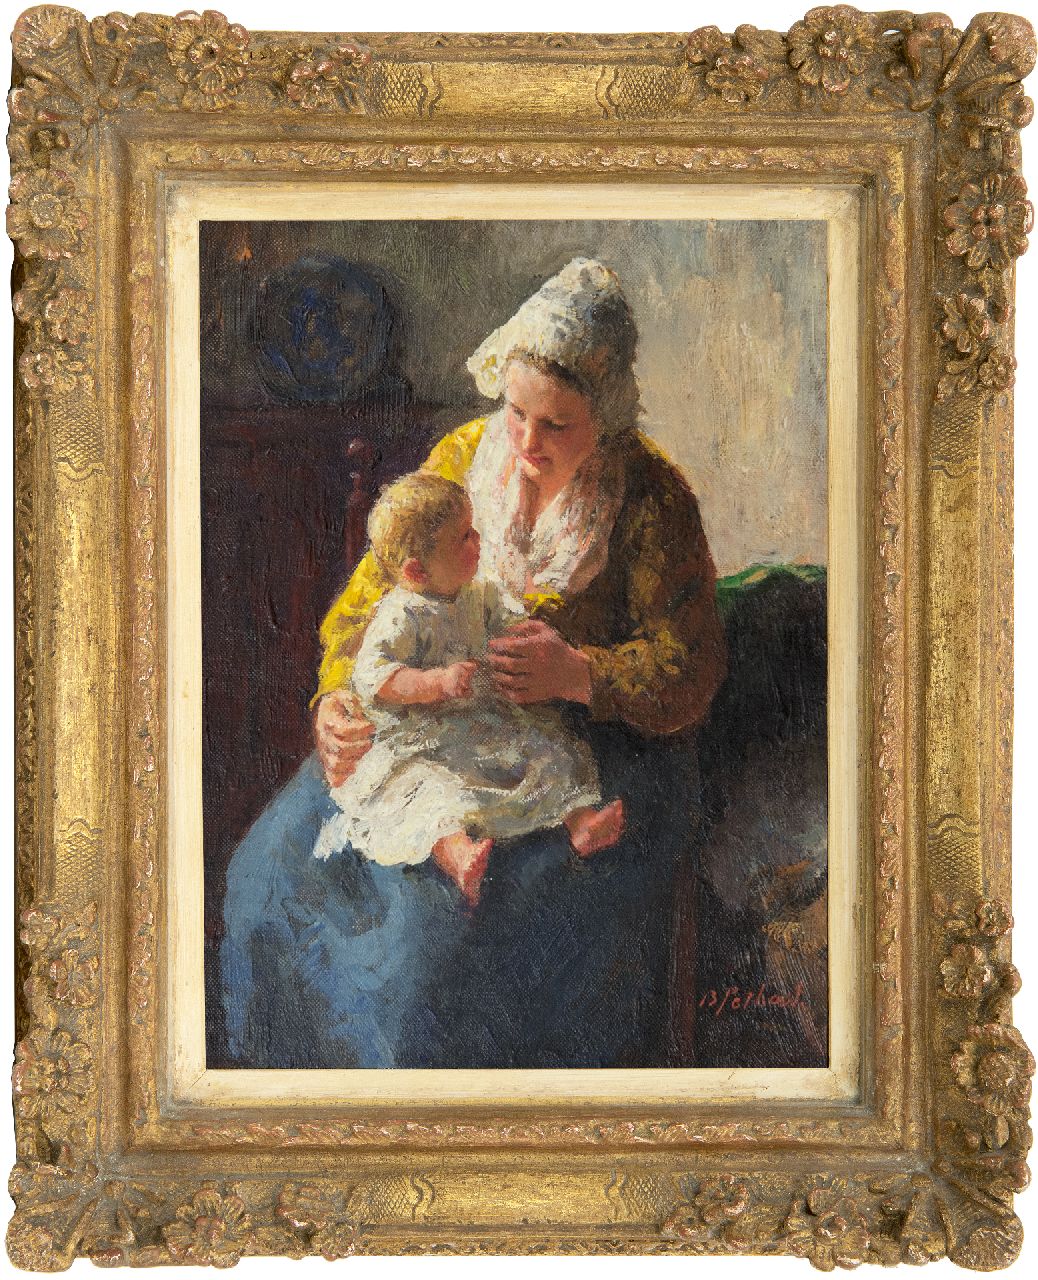 Pothast B.J.C.  | 'Bernard' Jean Corneille Pothast, Moeder en kind, olieverf op doek 25,1 x 18,9 cm, gesigneerd rechtsonder